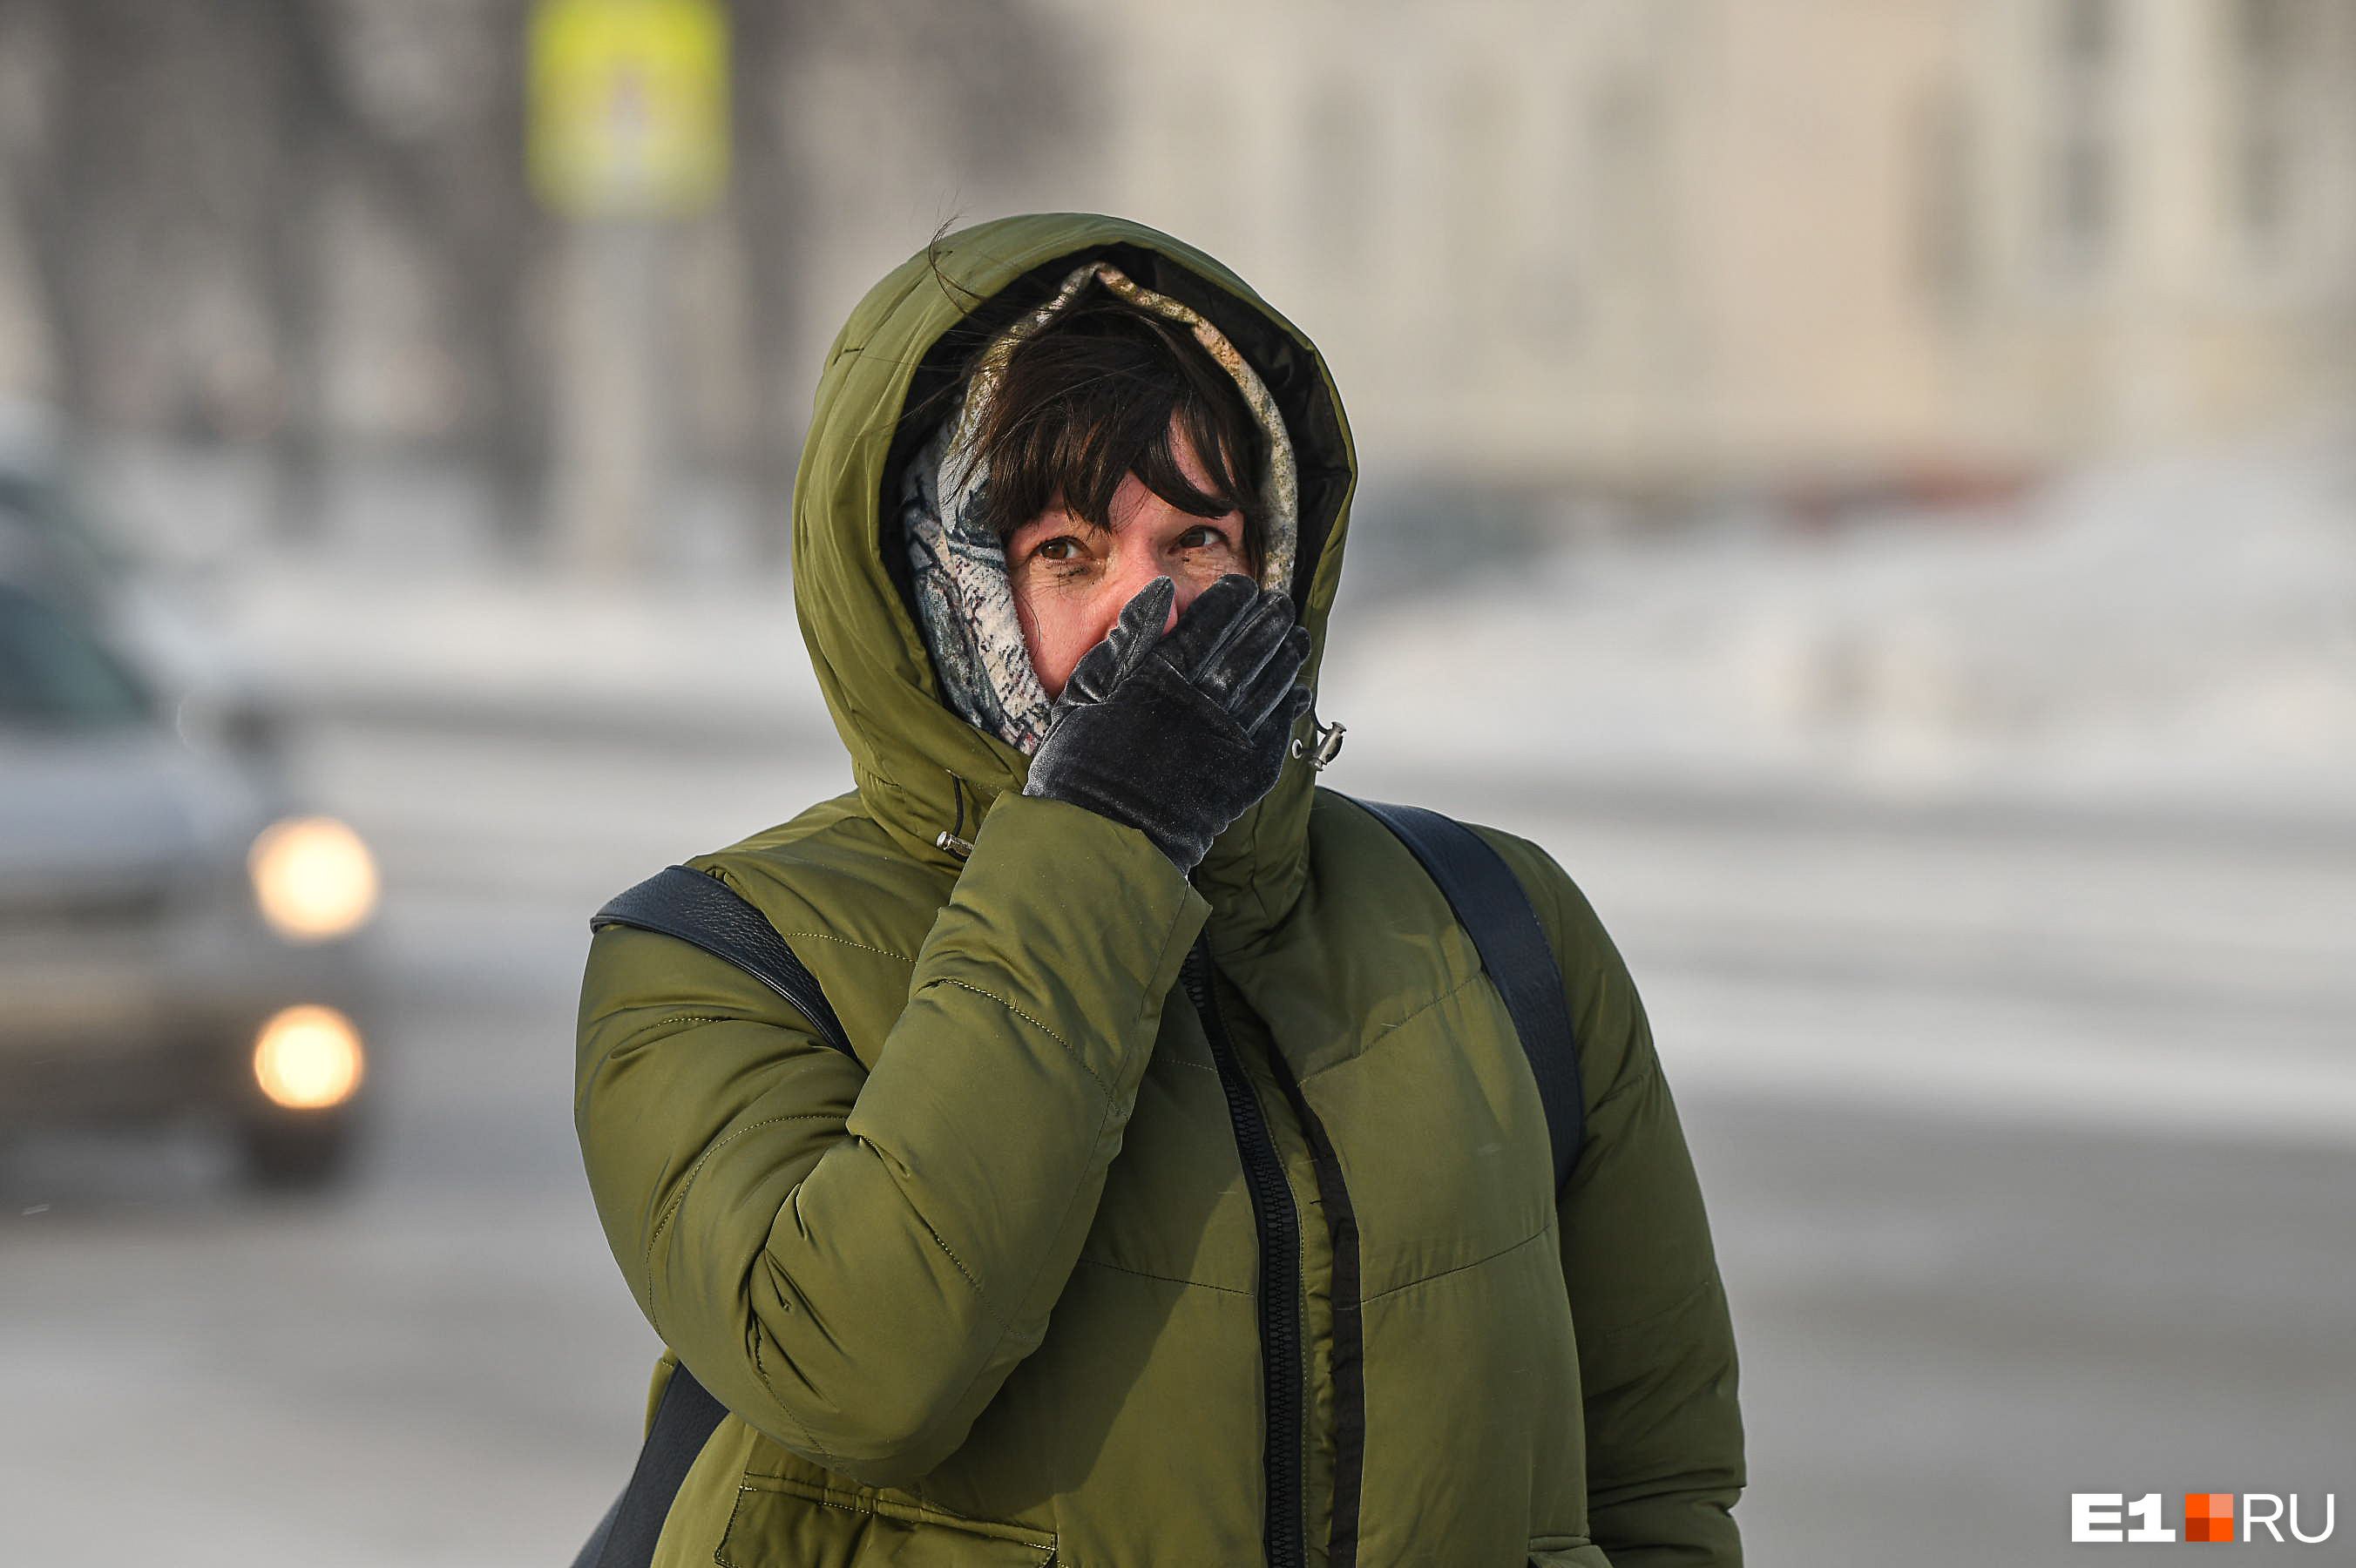 «Ситуация усугубится в выходные». На Свердловскую область надвигаются морозы до -28 градусов